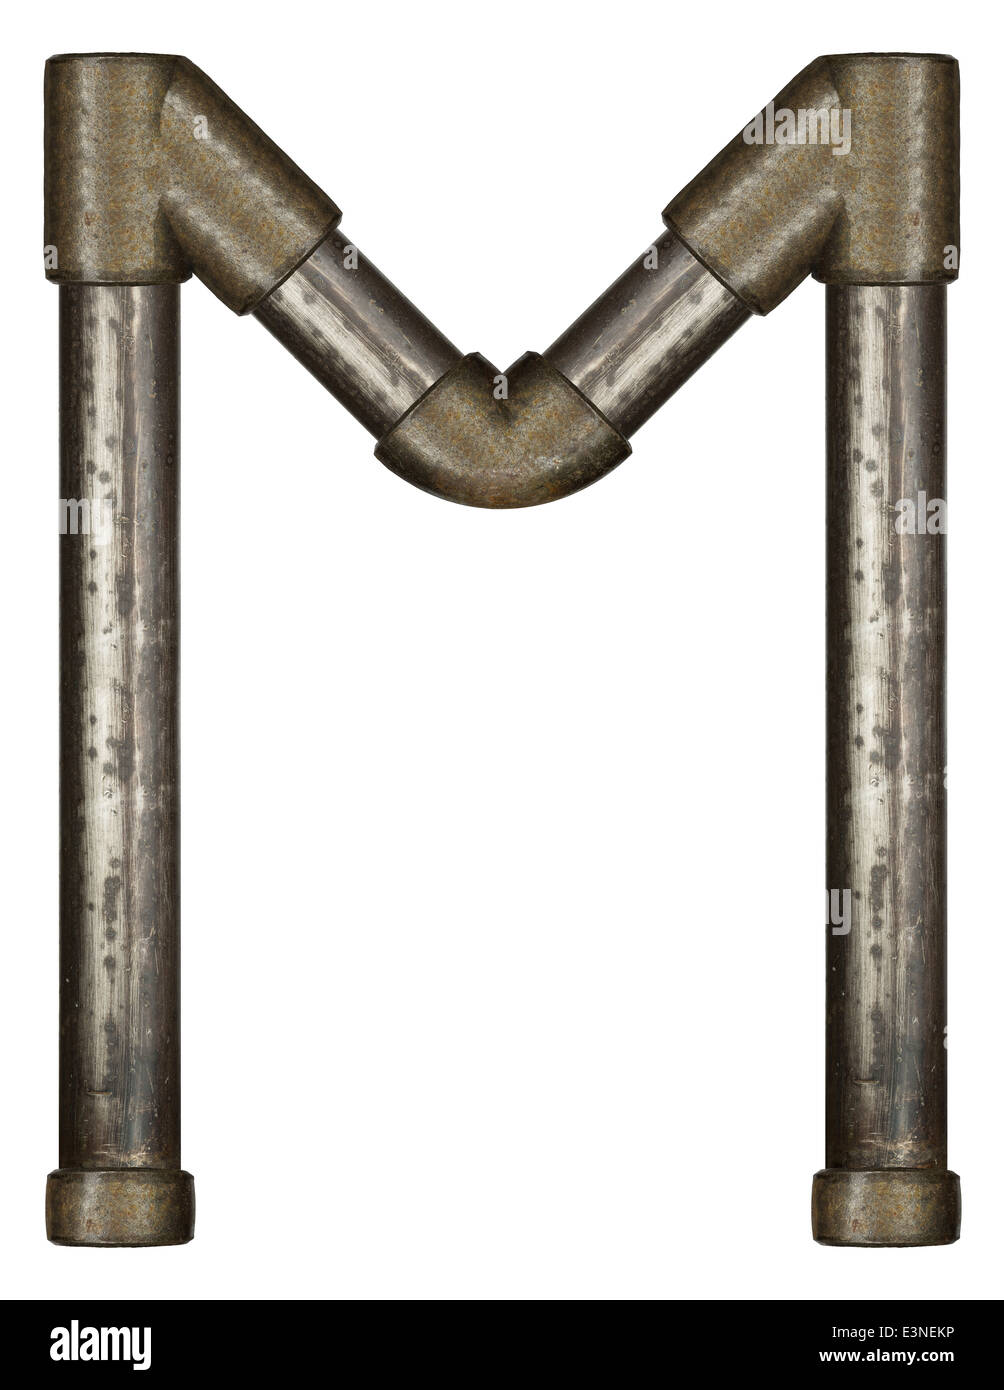 Tubo de metal industrial letra del alfabeto Foto de stock